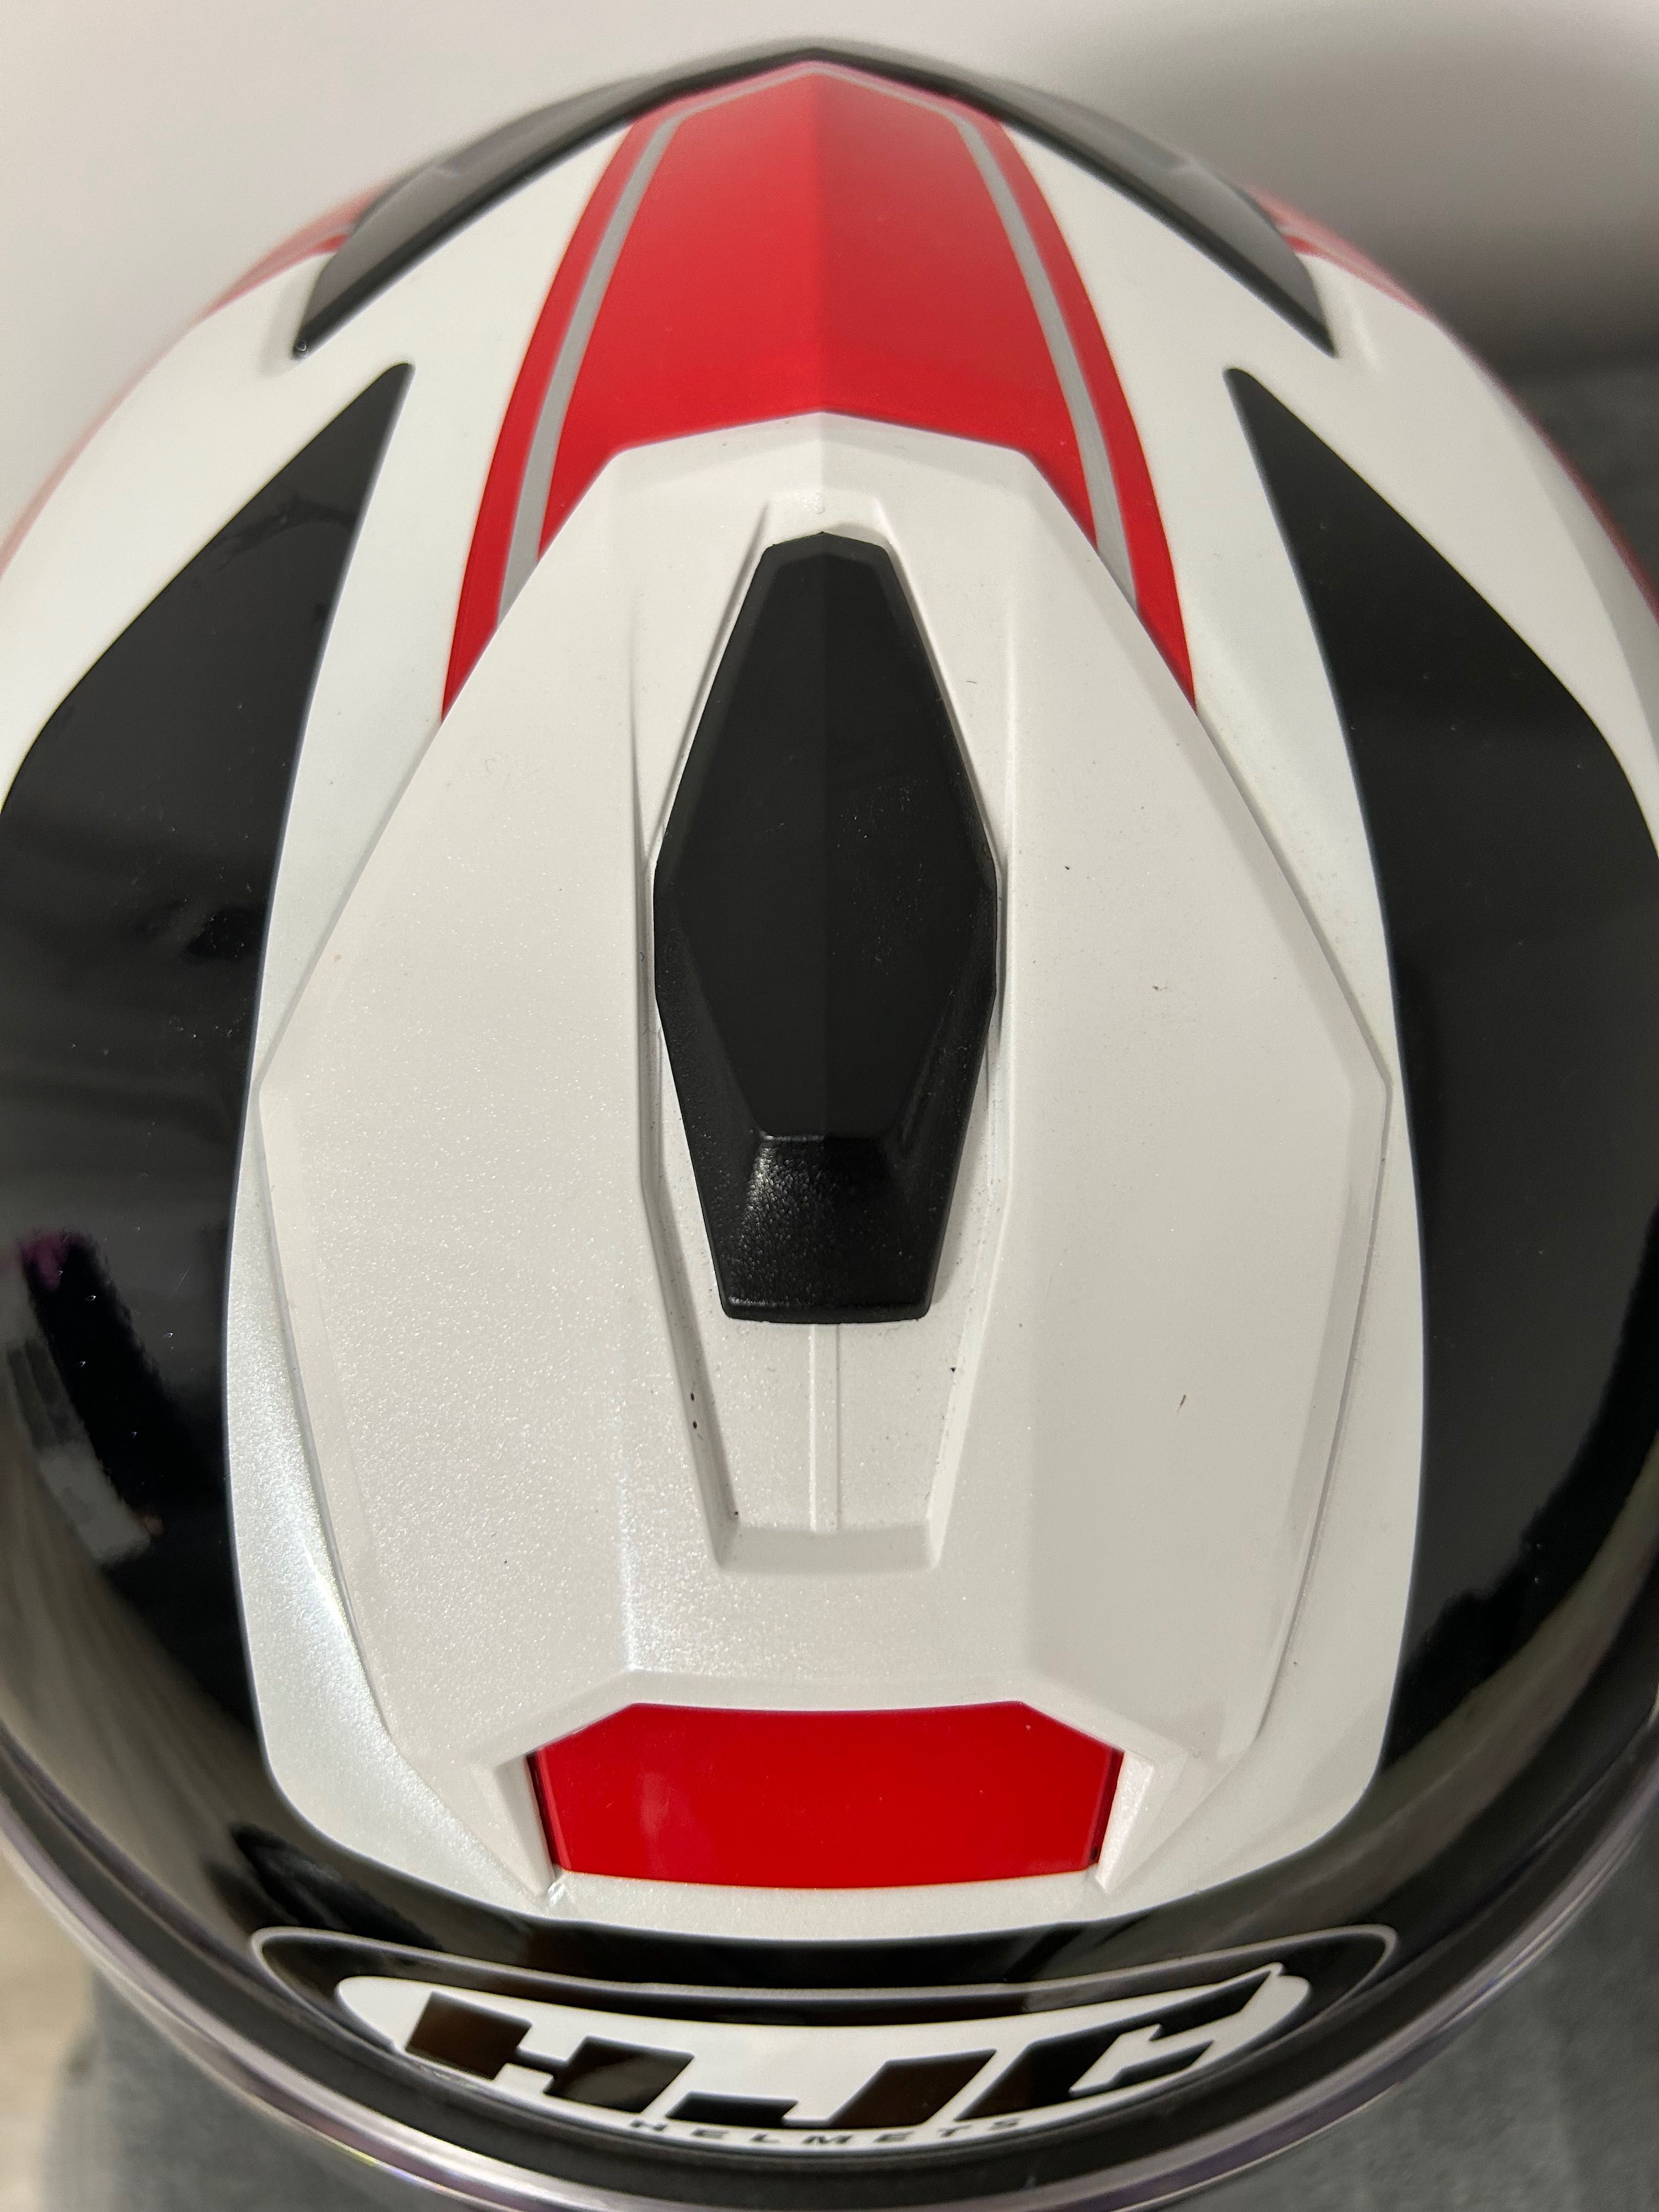 Helmet Flip-Up i90 Wasco Red/White/Black | HJC